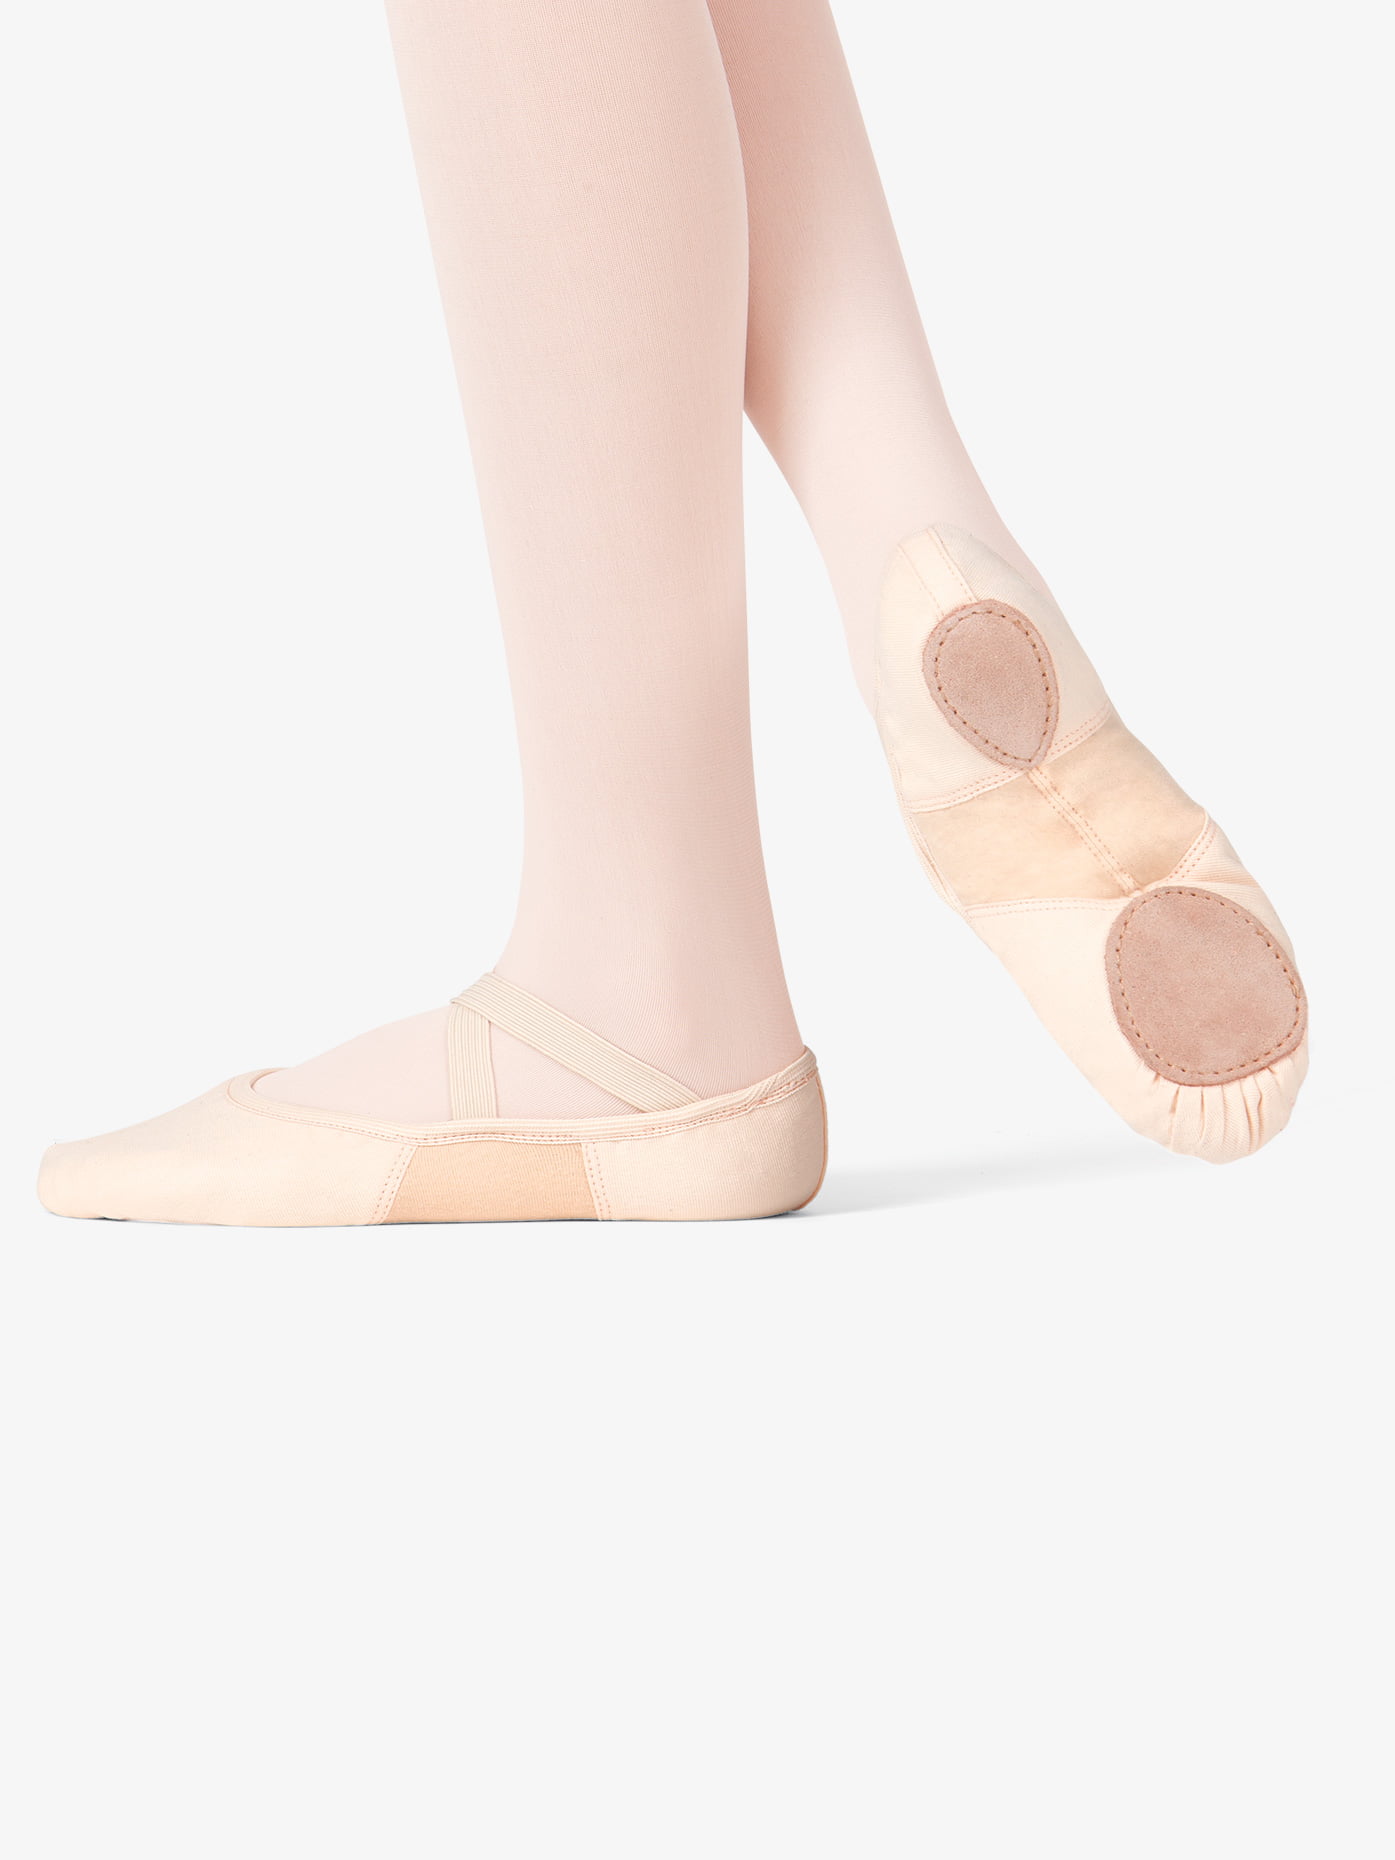 Danshuz Little Girls Pink Soft Leather Rose Ballet Shoes Size 6.5-3